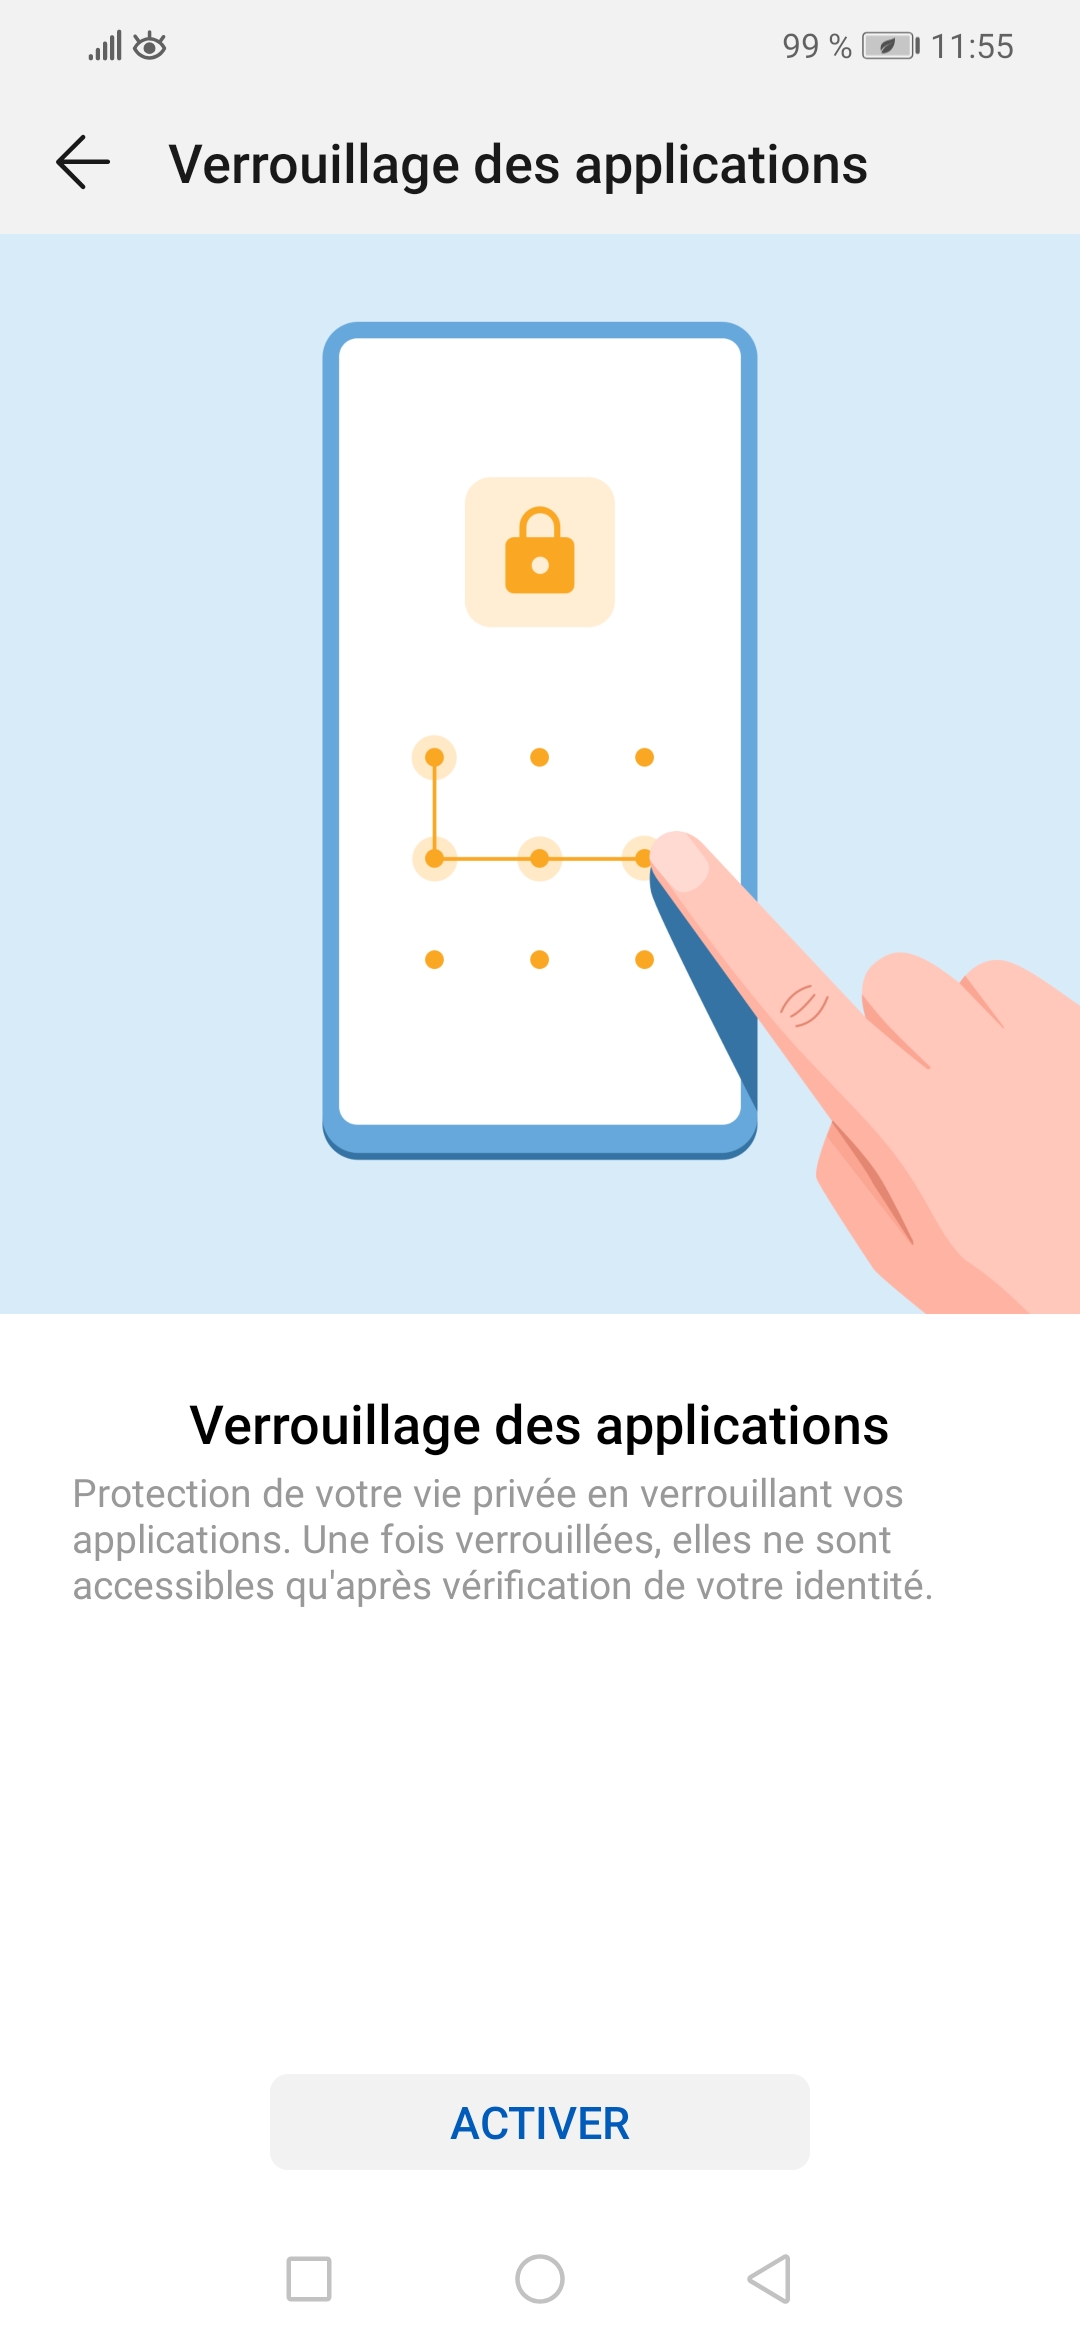 SFR-Les-astuces-pour-protéger-votre-smartphone_21022020_Verrouillage-application-iphone_005.jpg